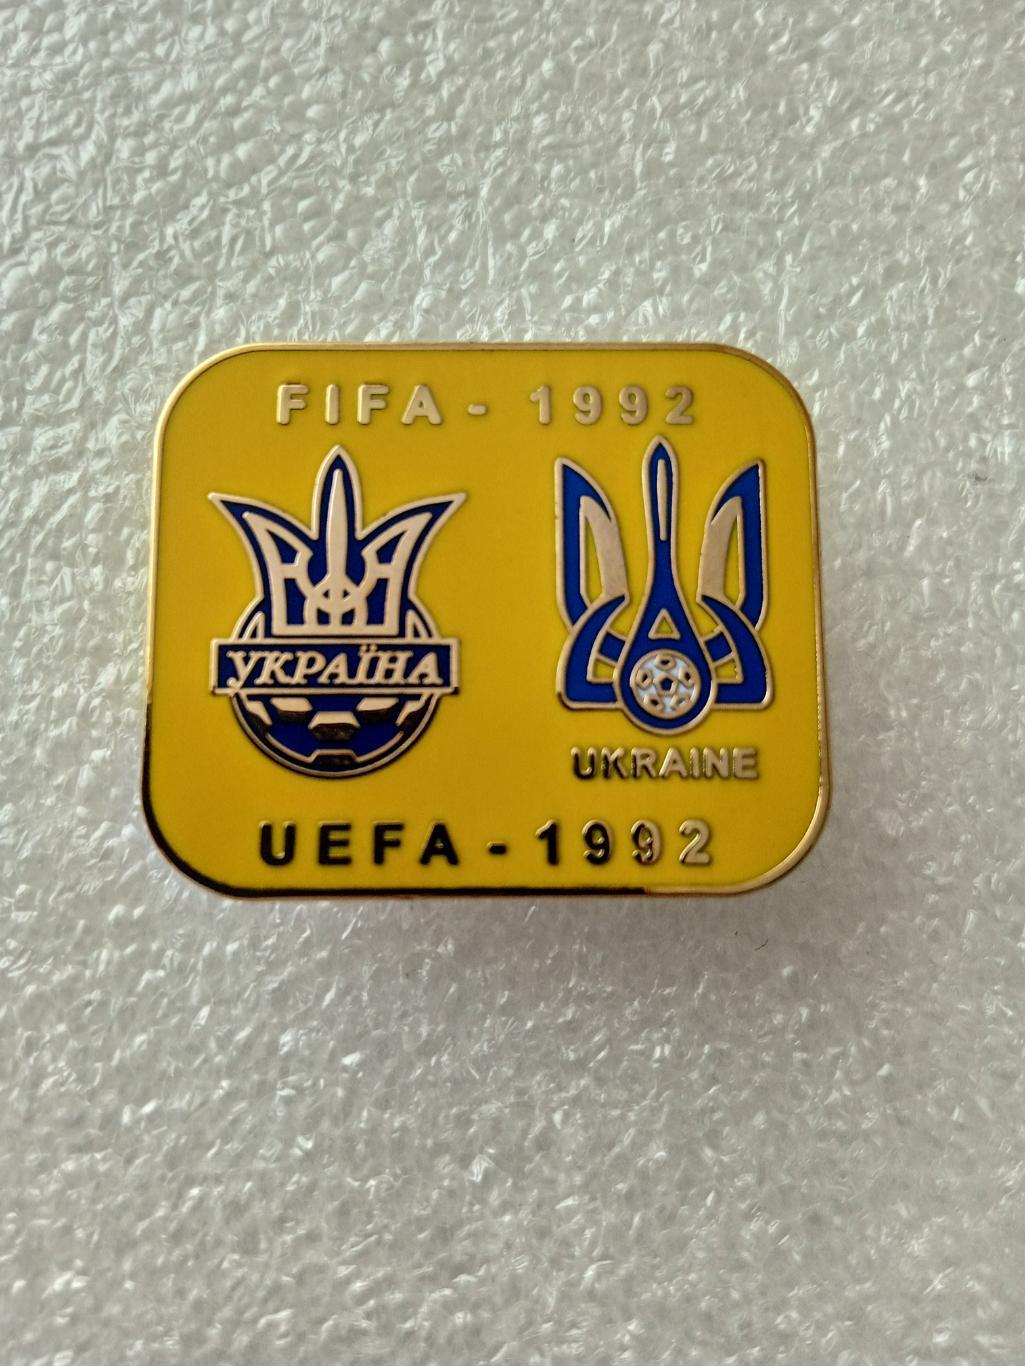 Украина -1992, федерация футбола.